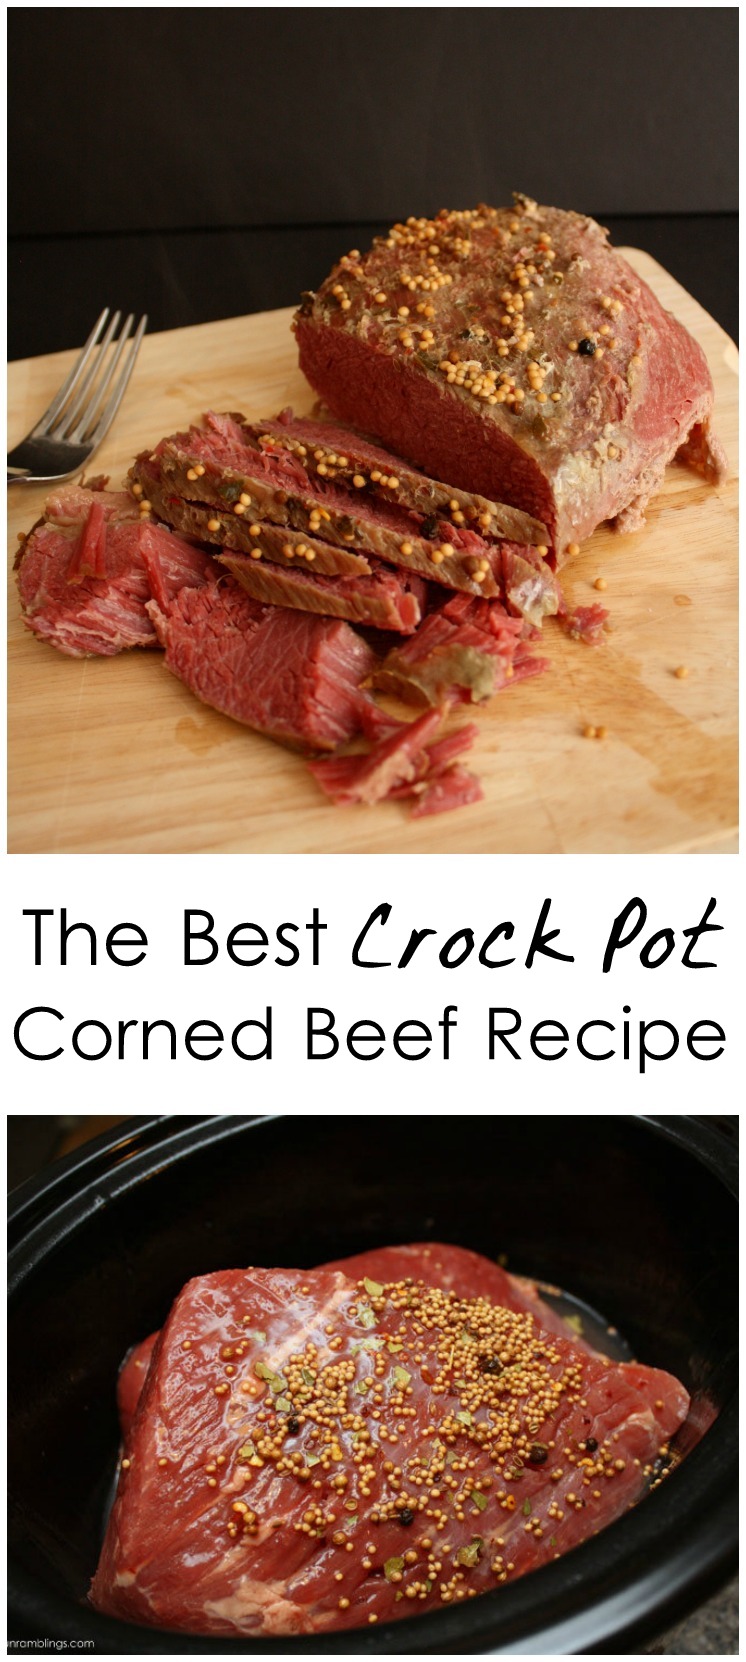 The Best Crock Pot Corned Beef Recipe - Rae Gun Ramblings